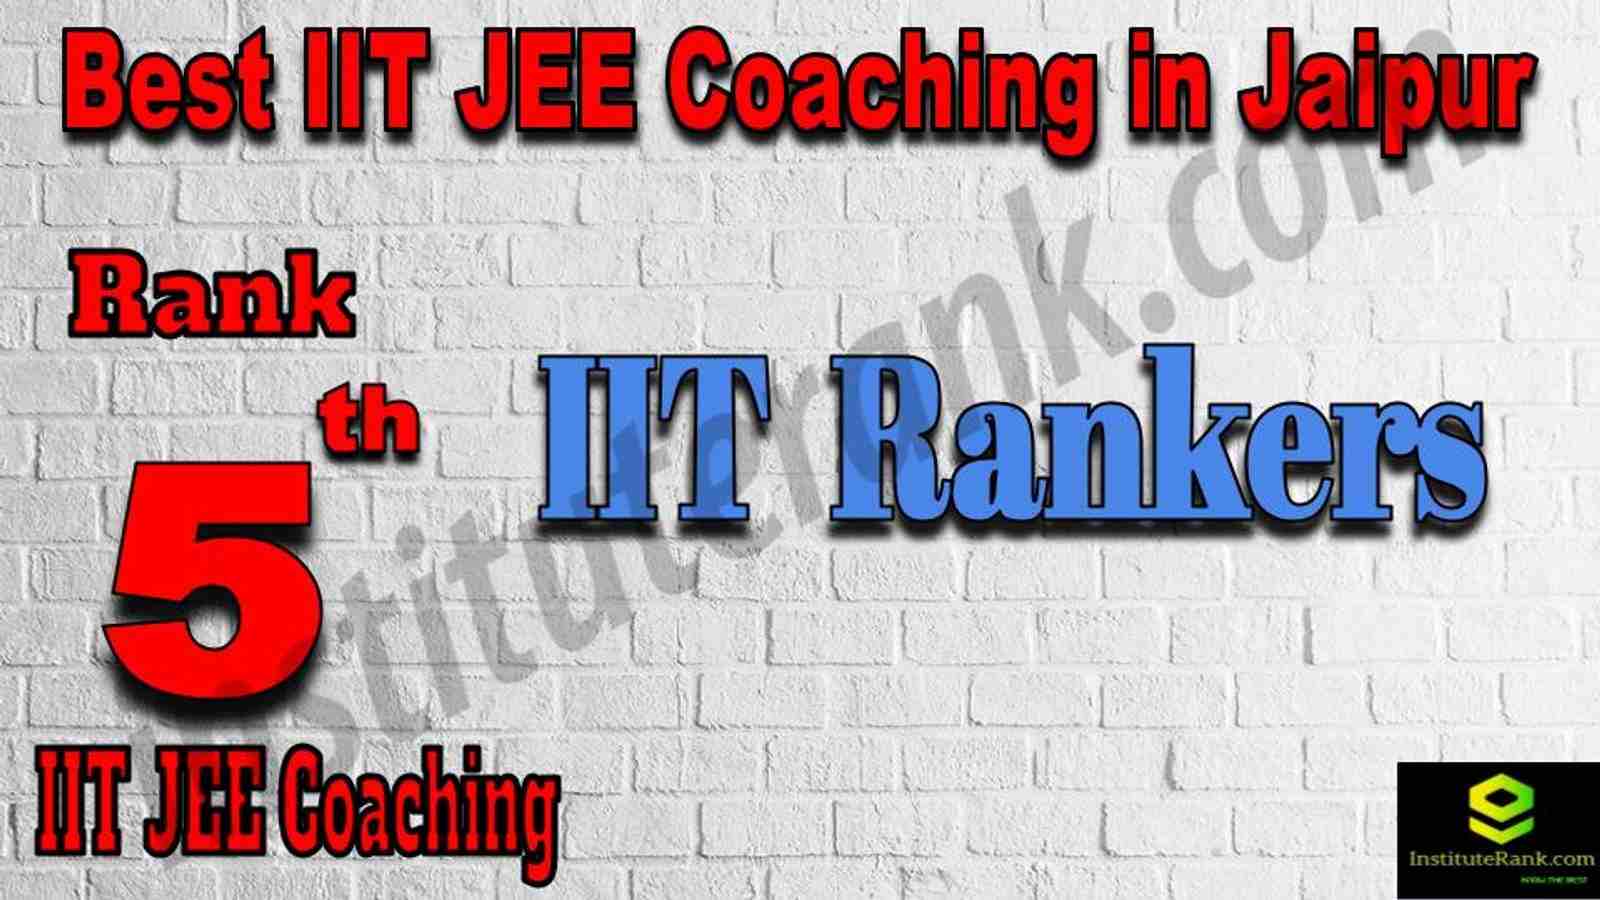 5th Best IIT JEE Coaching in Jaipur